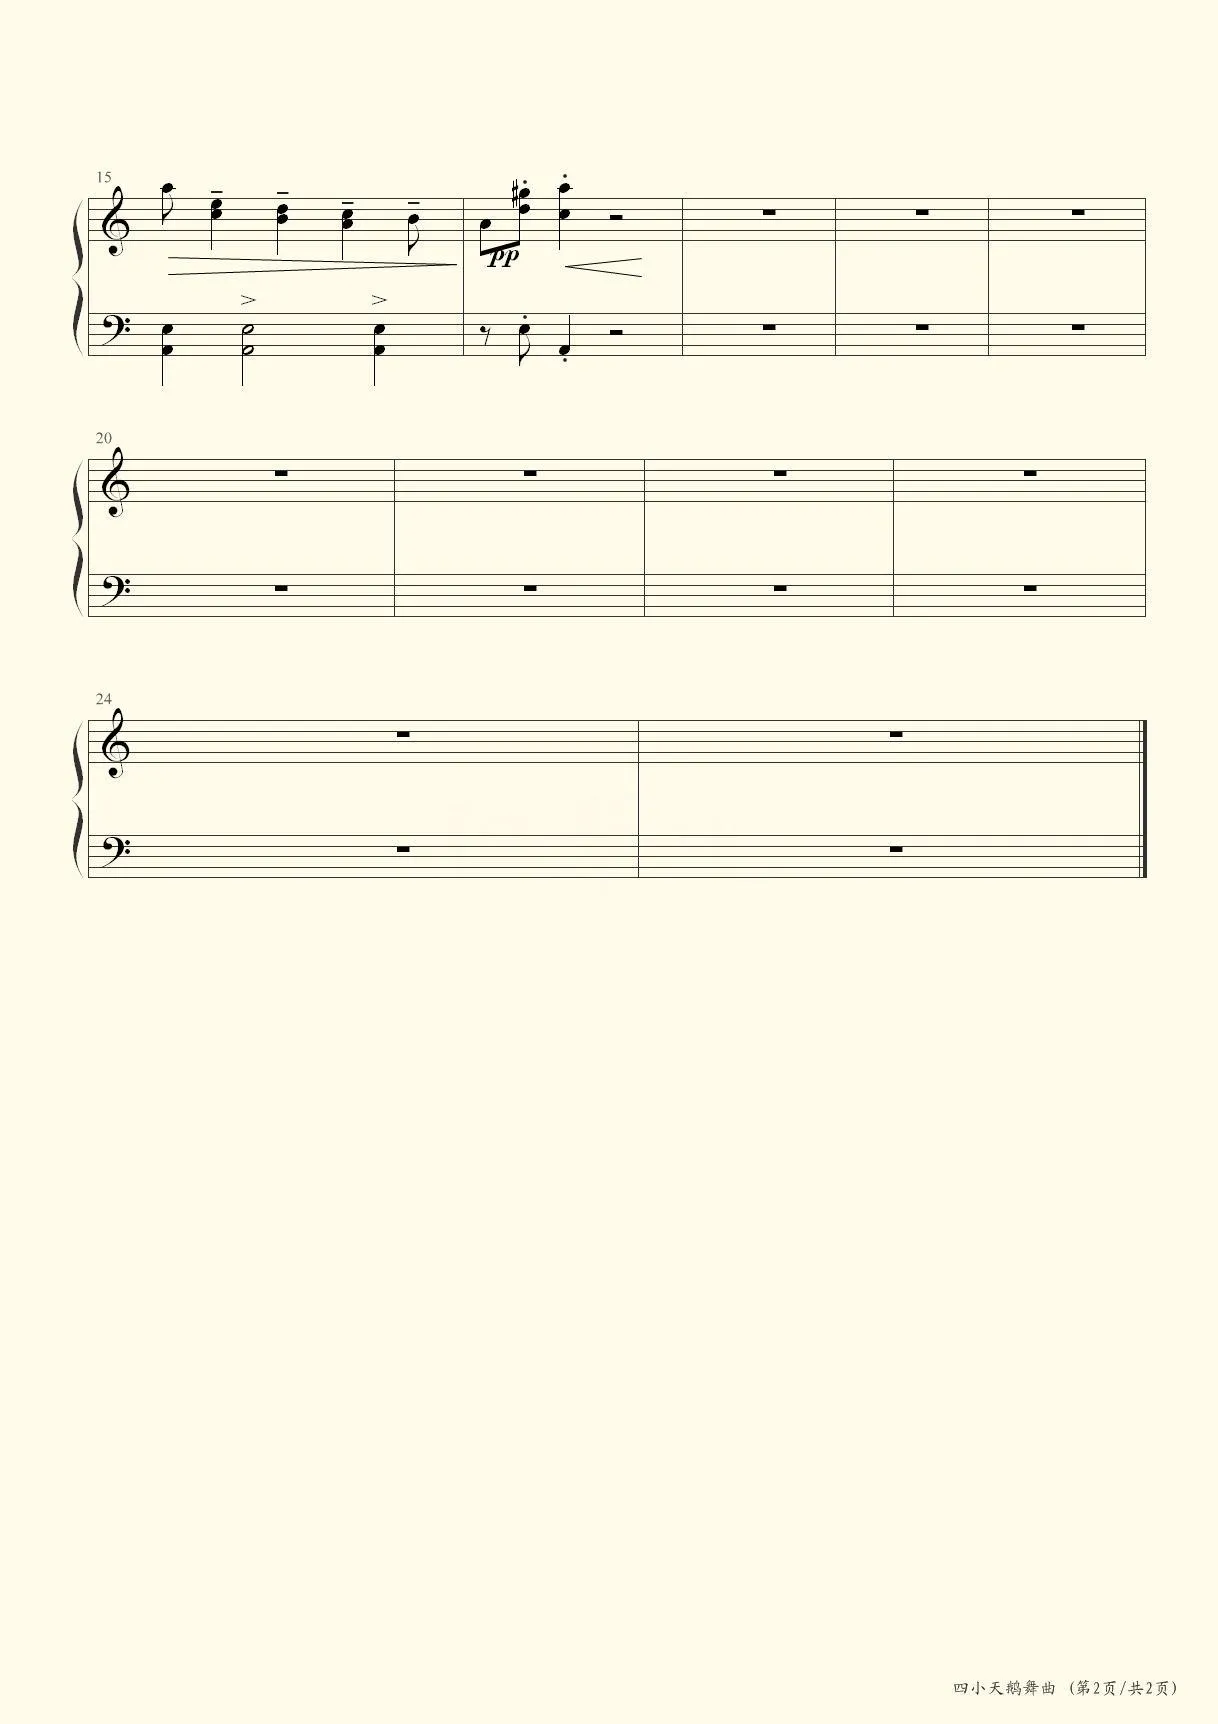 四小天鹅舞曲-《天鹅湖》选曲五线谱预览1-钢琴谱文件（五线谱、双手简谱、数字谱、Midi、PDF）免费下载